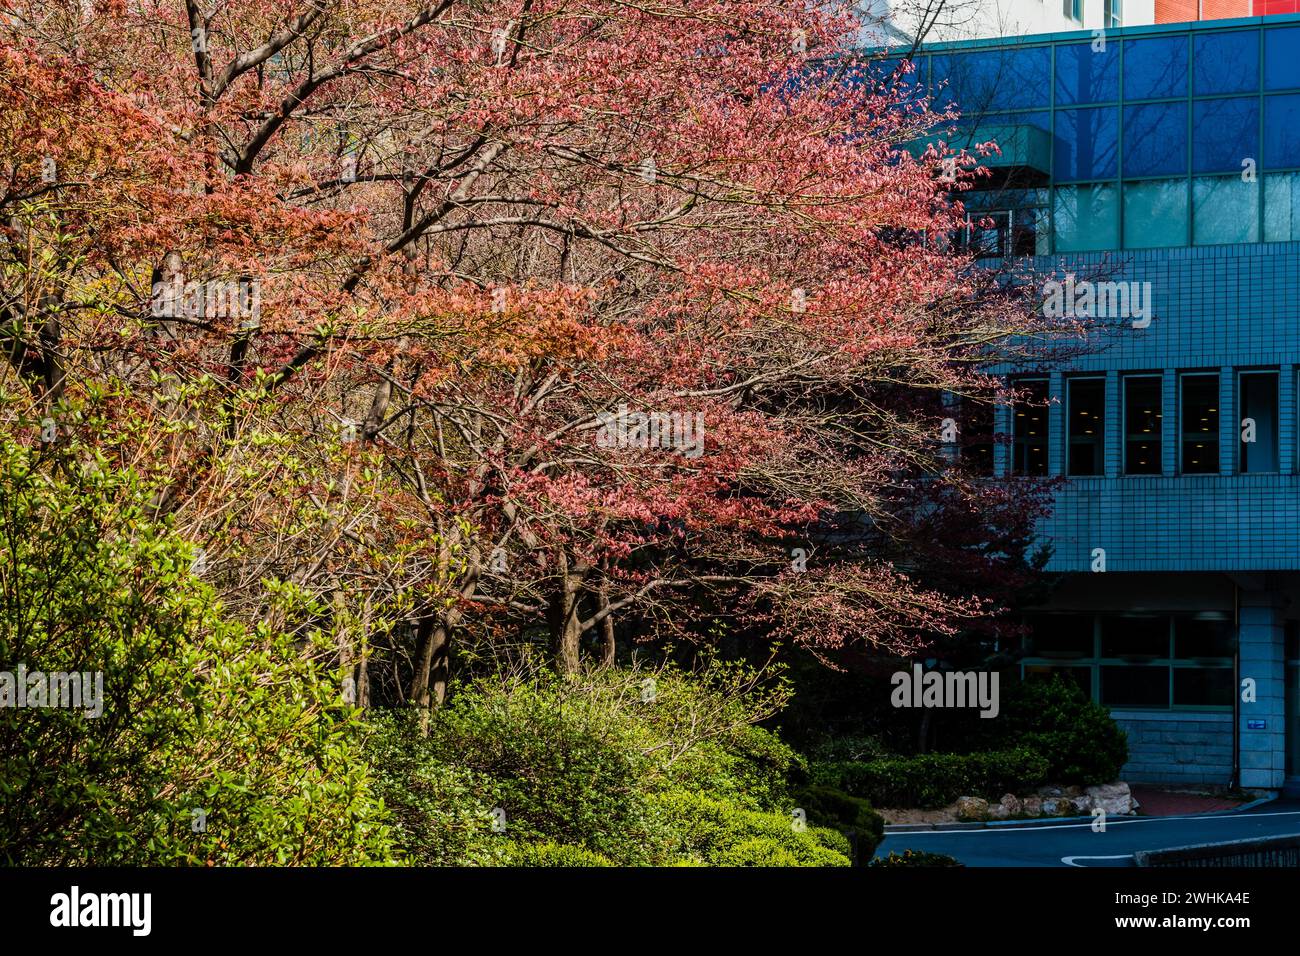 Cespugli verdi e un albero con foglie rosse inondate di luce solare davanti ad un edificio in mattoni bianchi Foto Stock